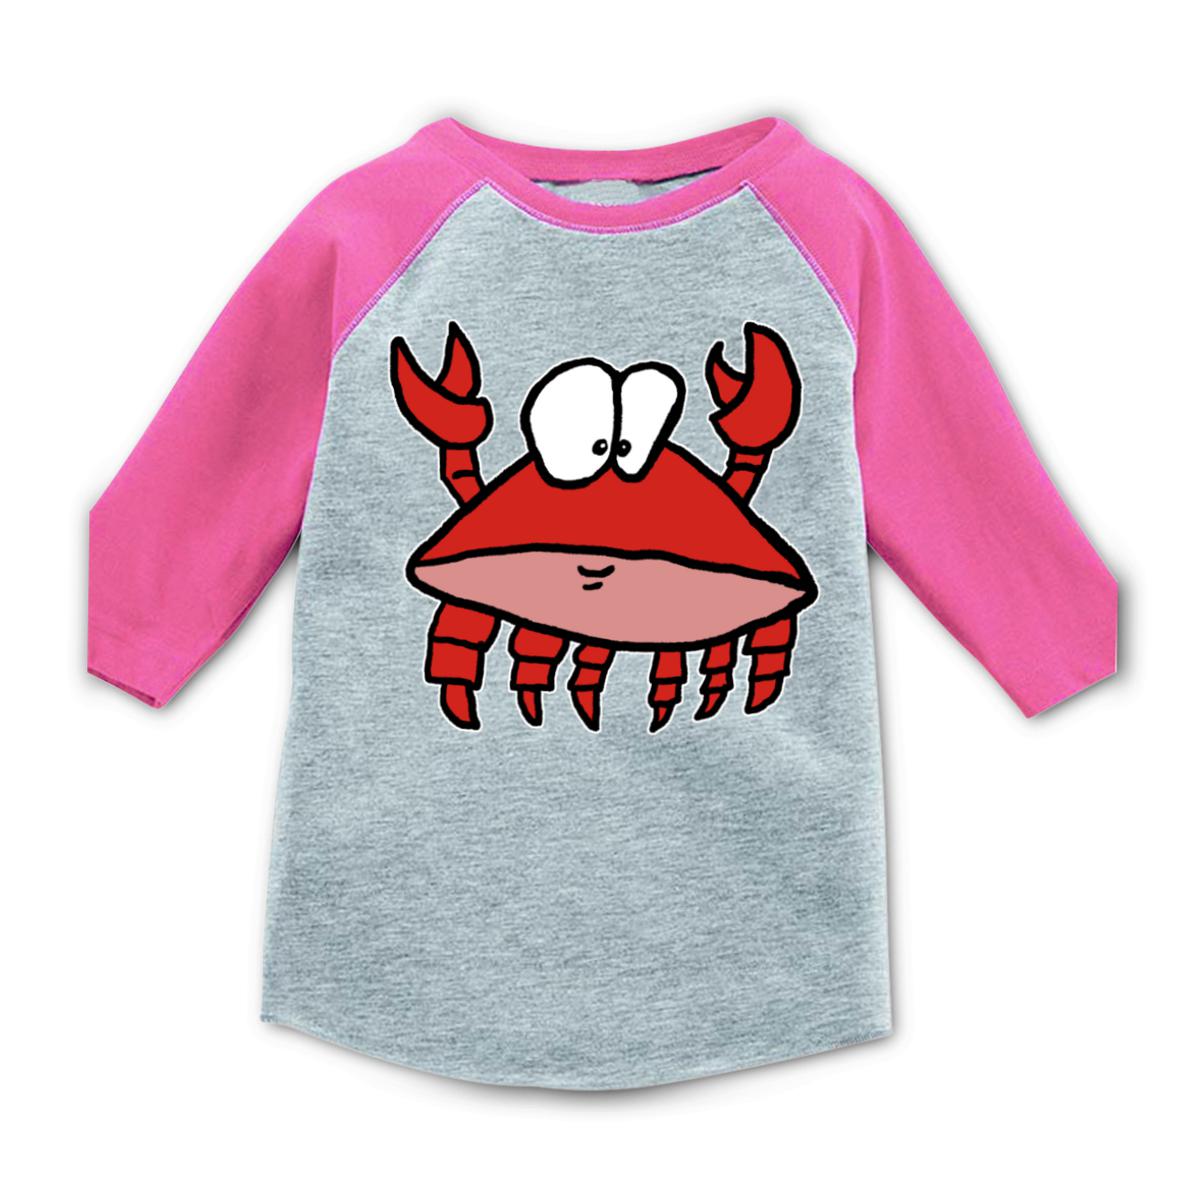 Crab 2.0 Toddler Raglan Tee 4T heather-pink